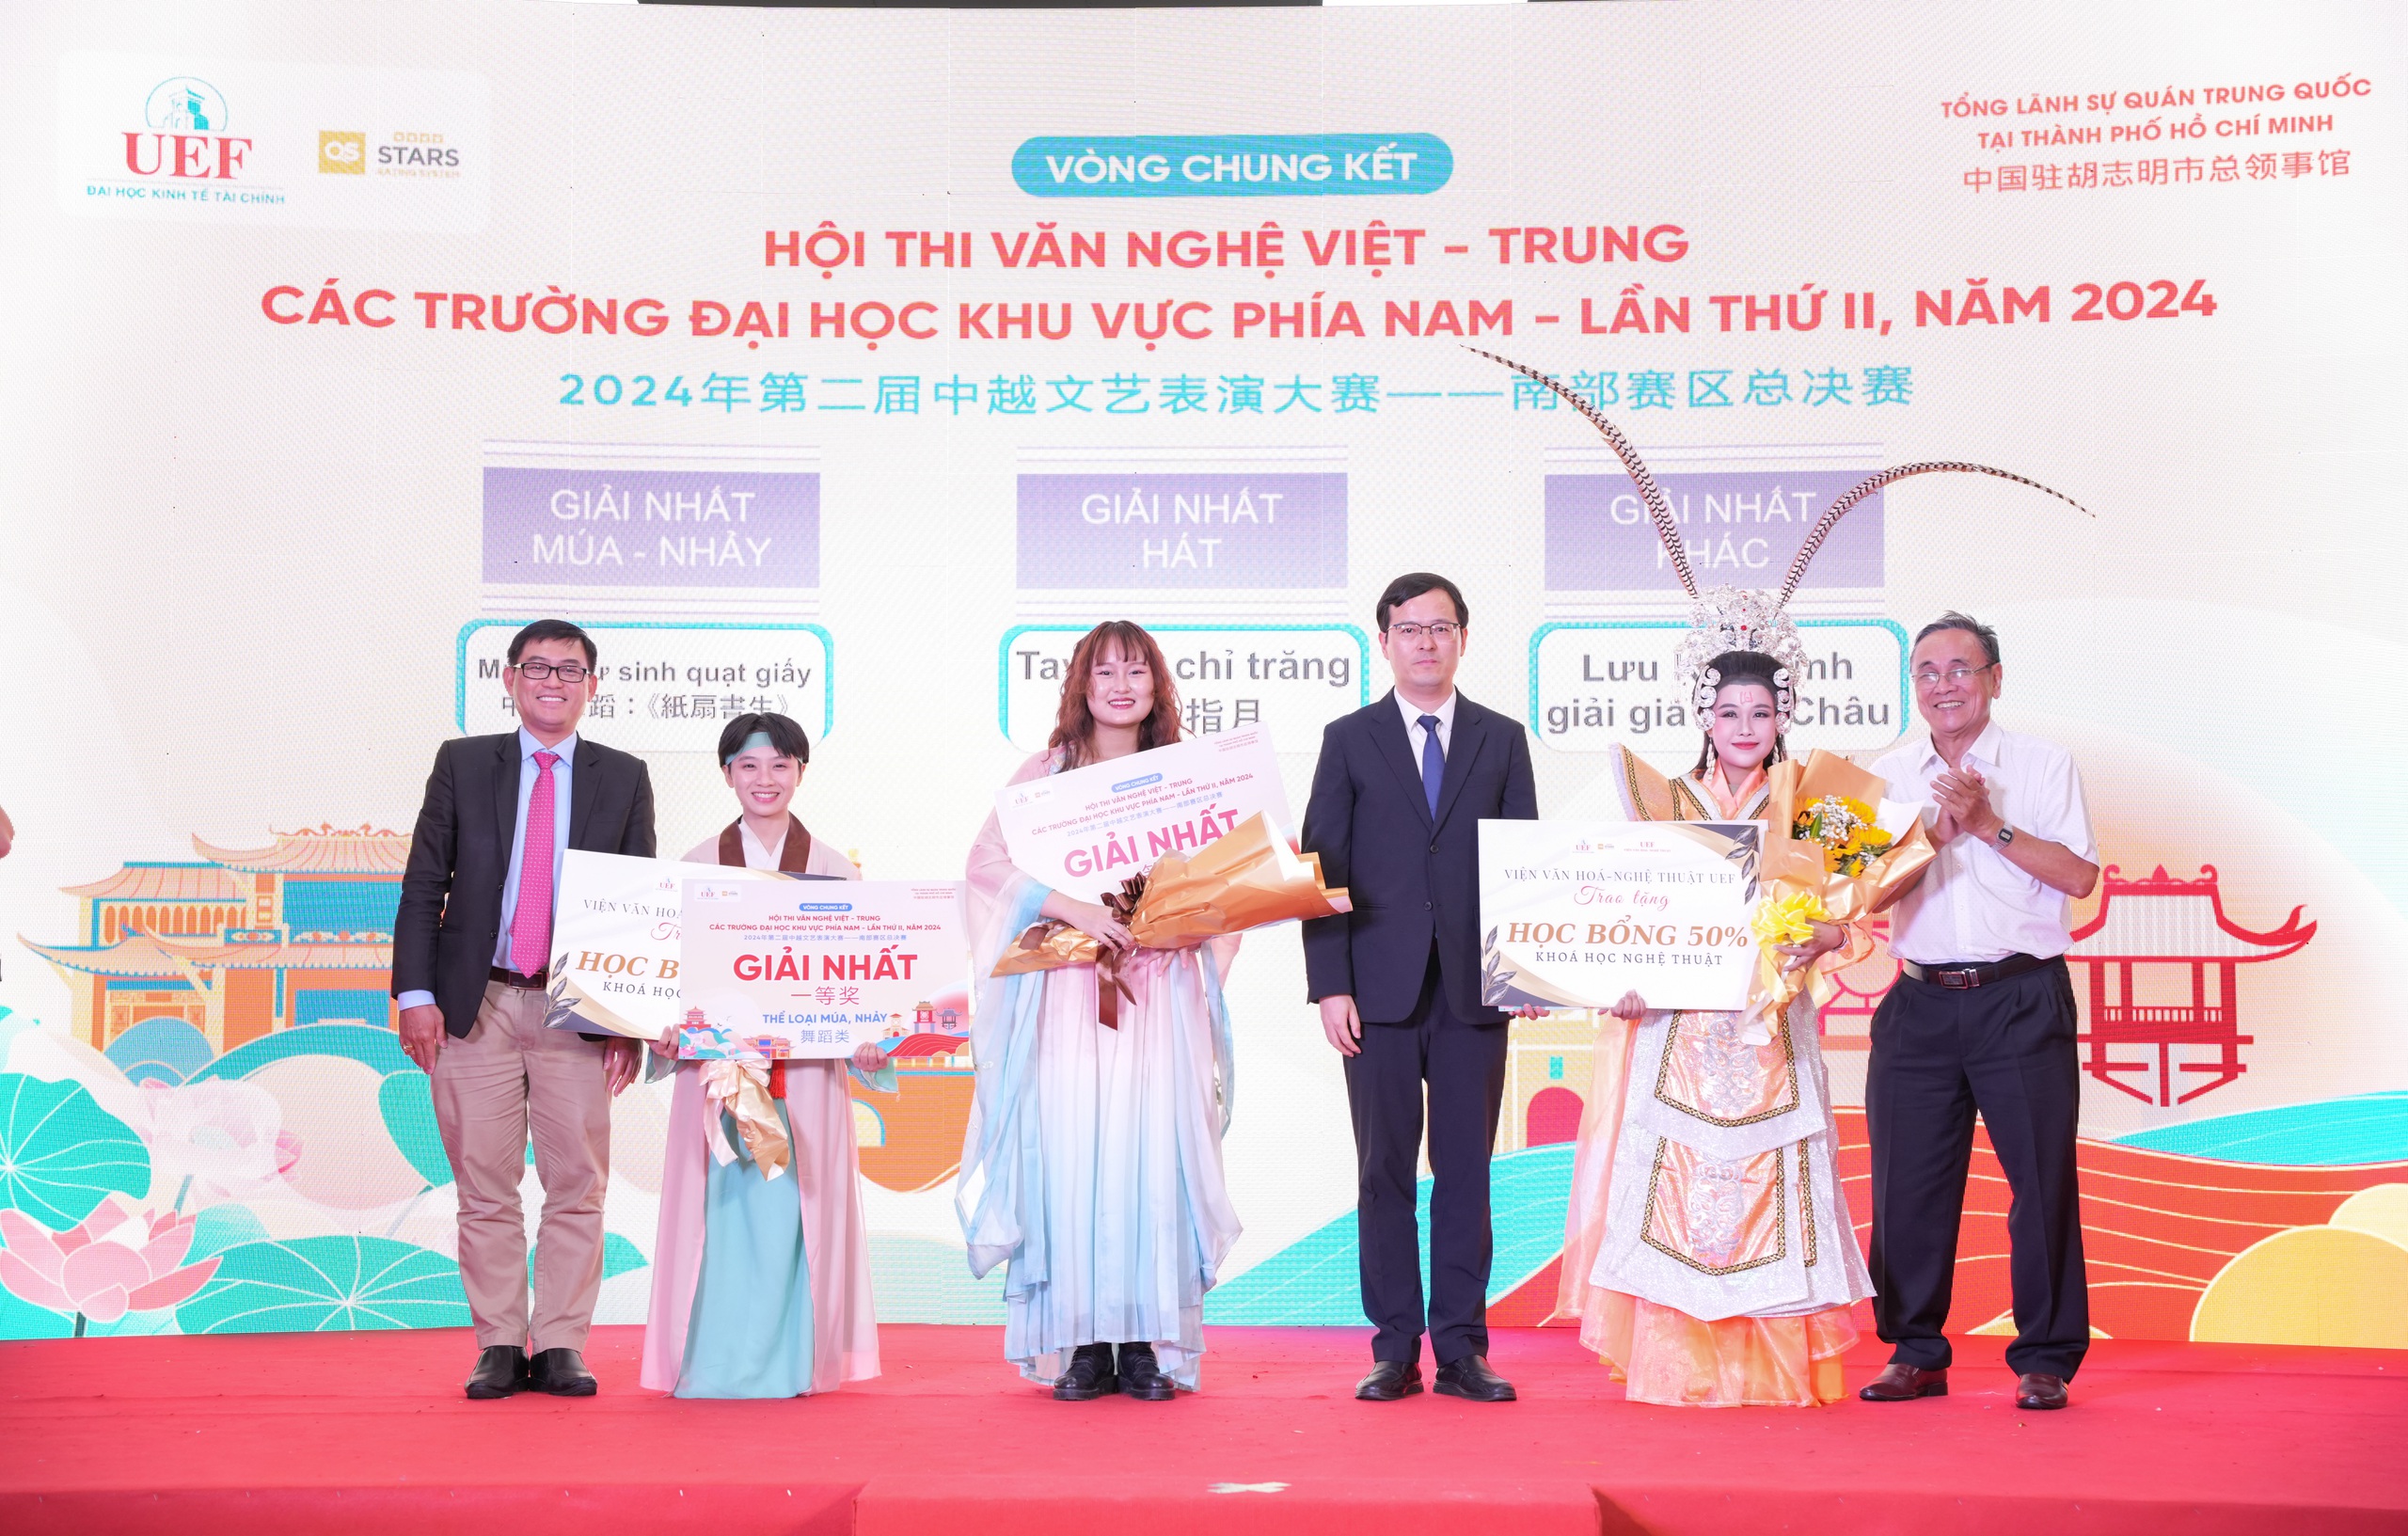 Đậm đà màu sắc văn hóa tại đêm chung kết hội thi văn nghệ Việt - Trung 2024- Ảnh 2.